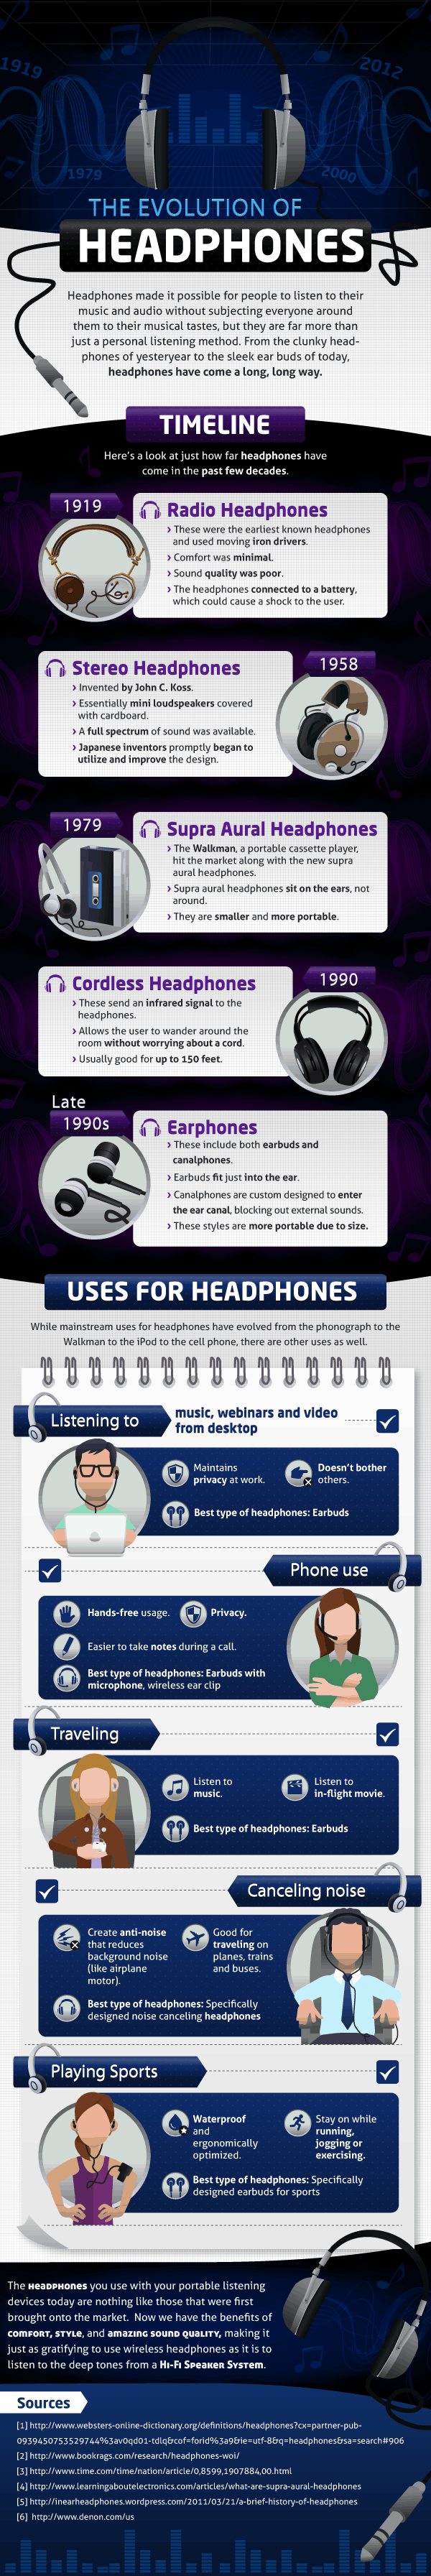 Evolution-of-Headphones.png